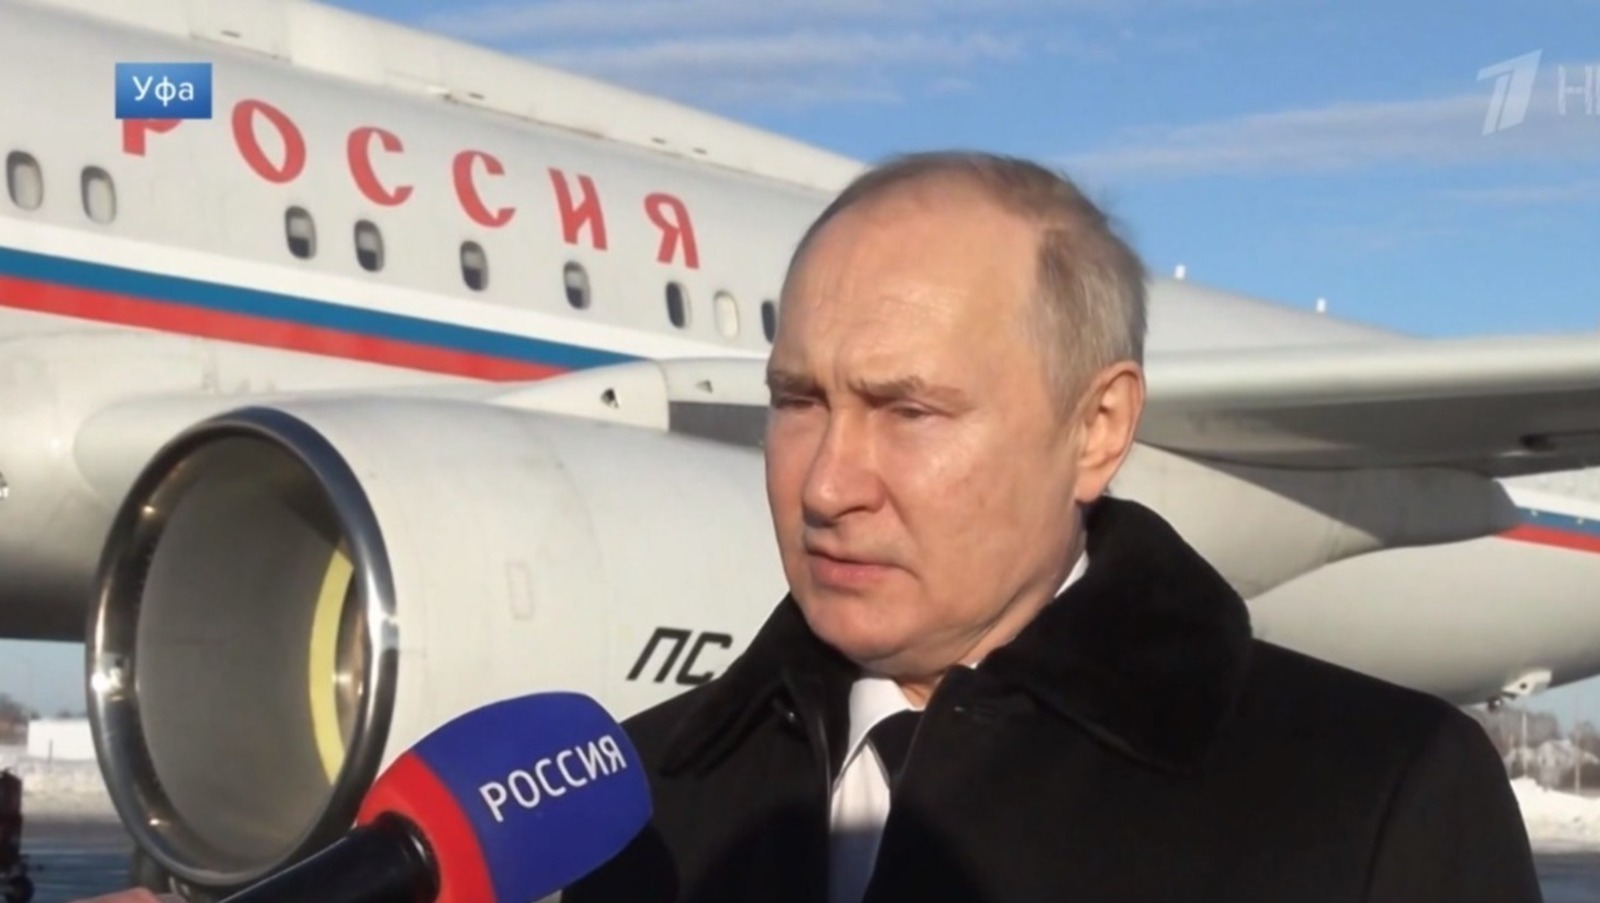 Политологи и экономисты прокомментировали визит Владимира Путина в Башкирию